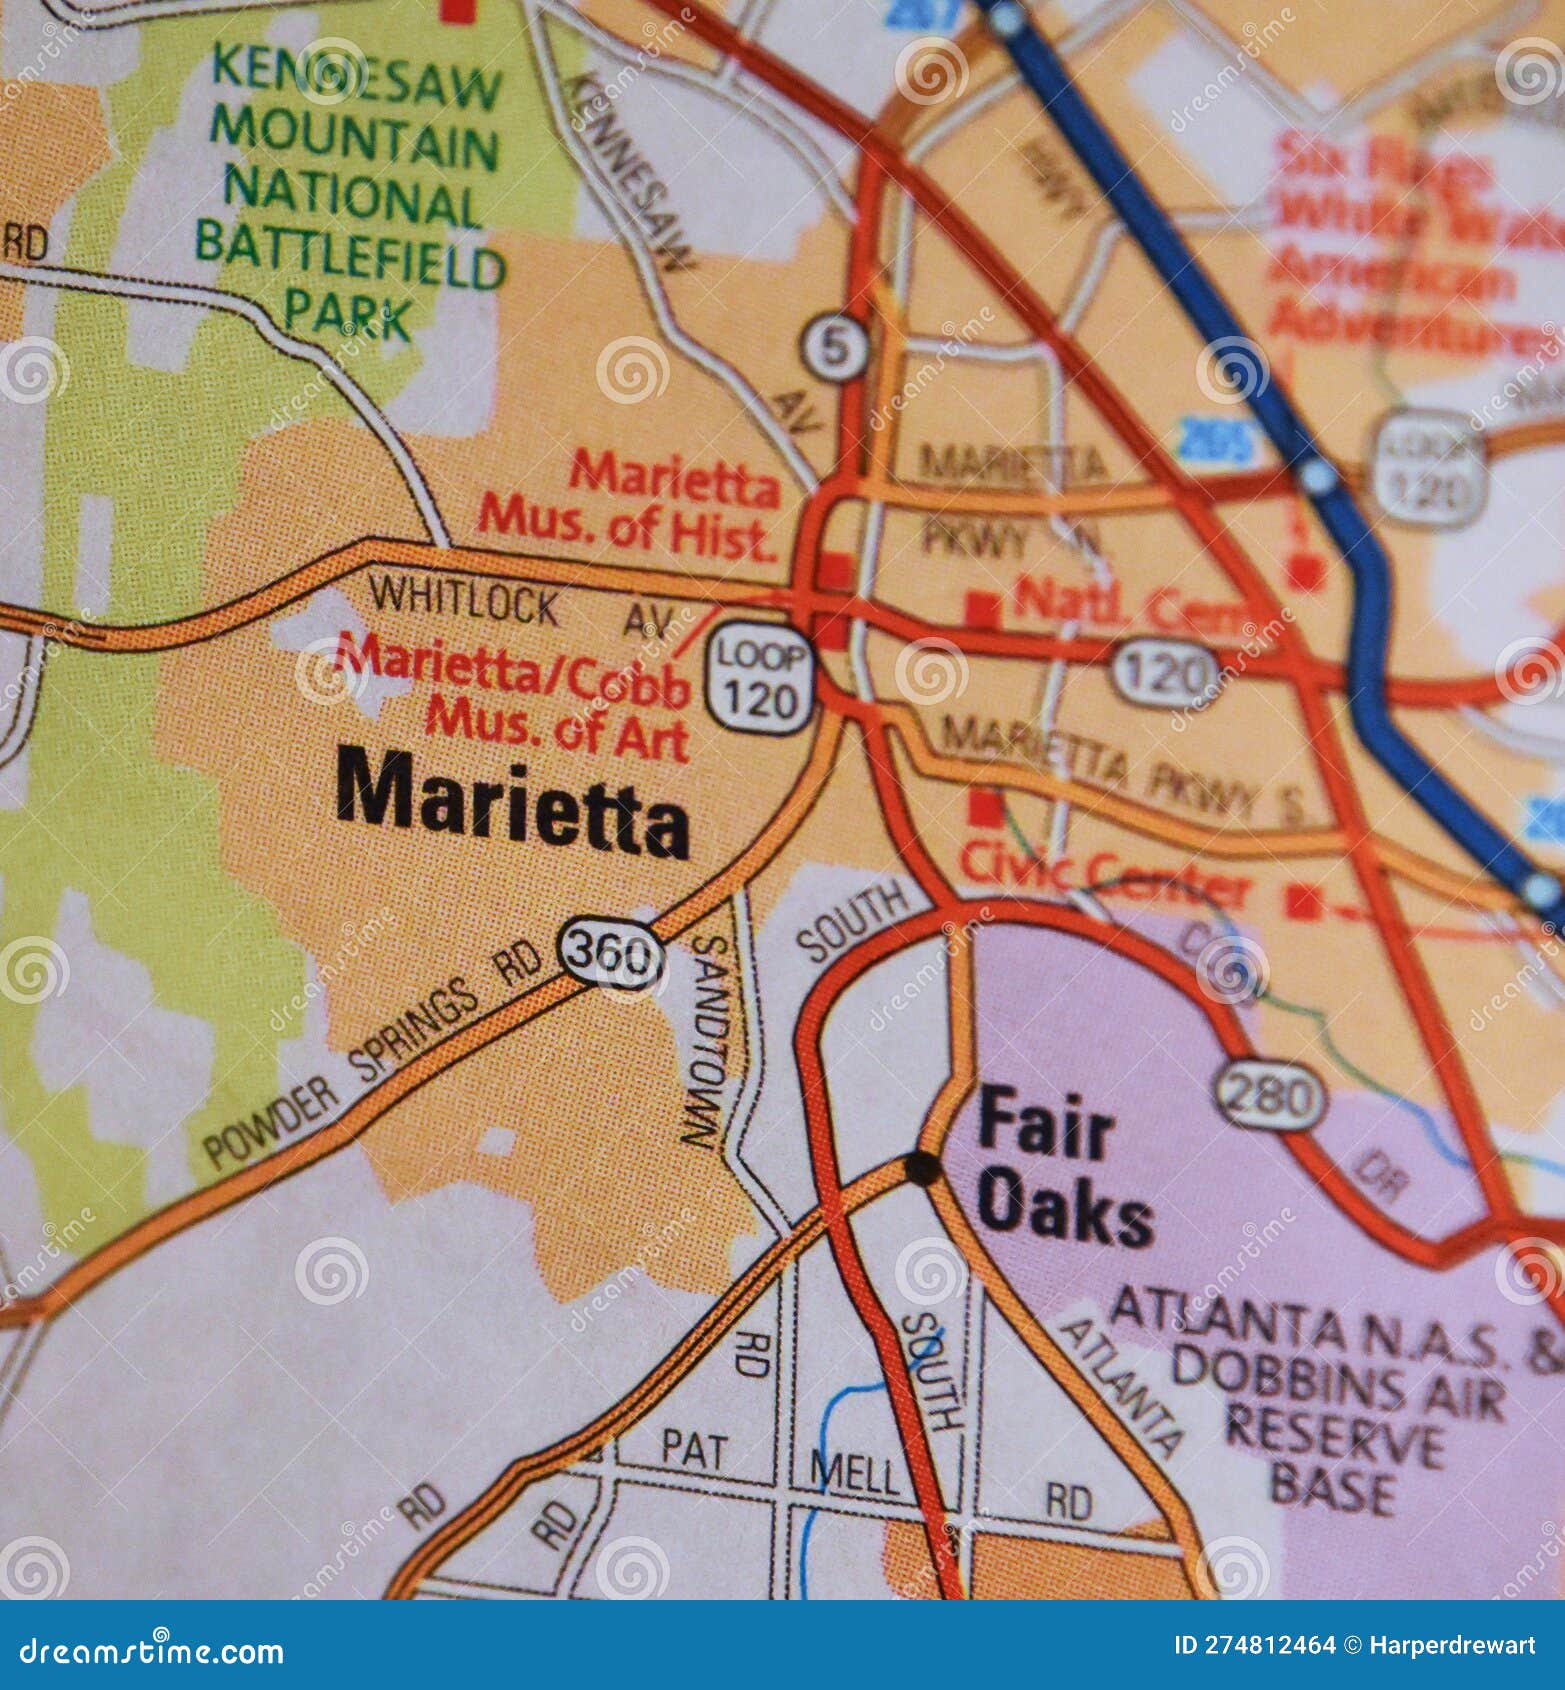 map image of marietta, georgia